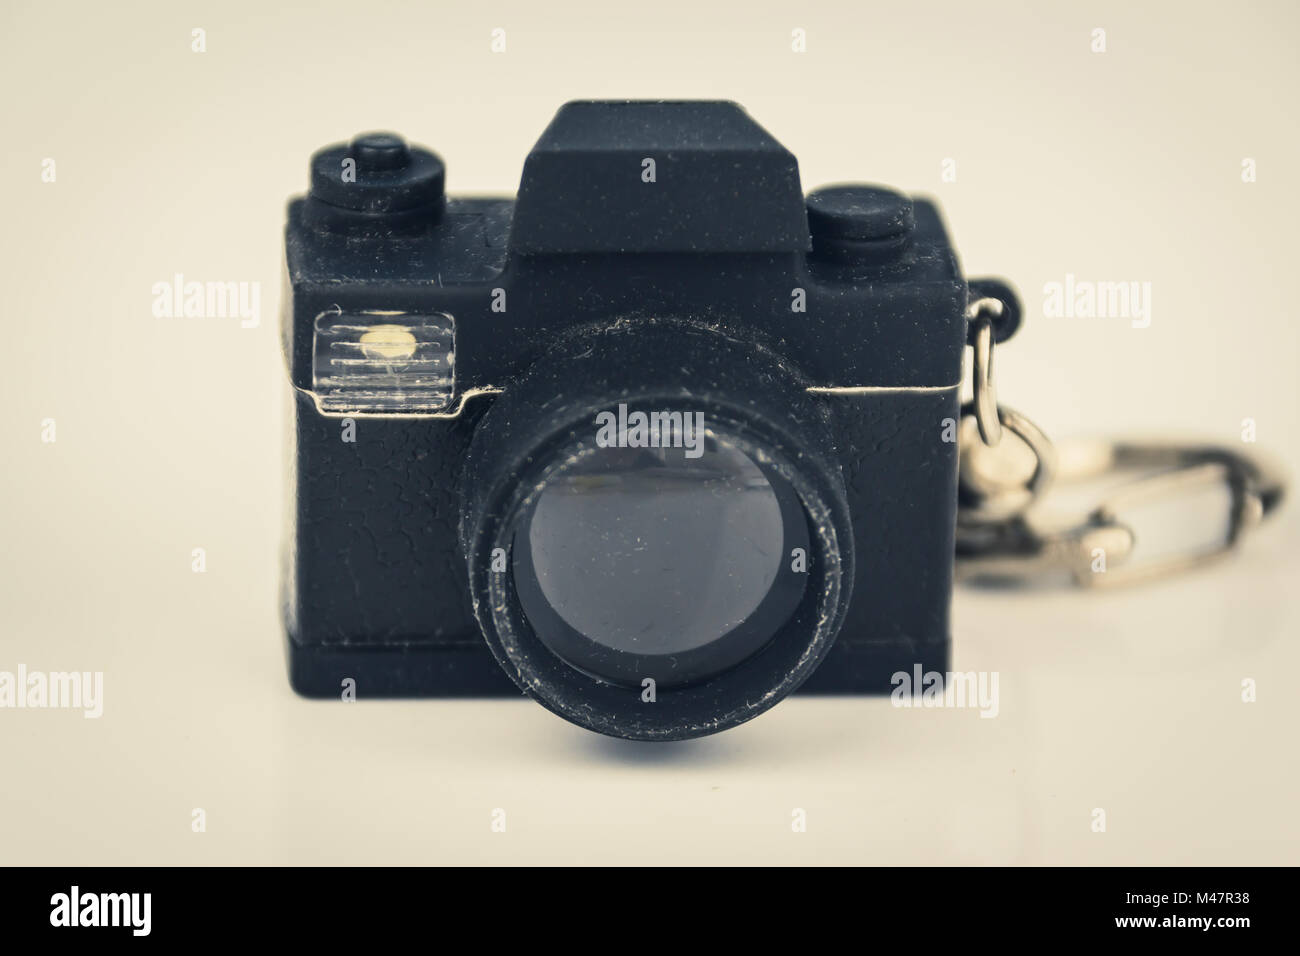 Foto in miniatura fotocamera giocattolo, concetto di fotografia, filtro vintage Foto Stock